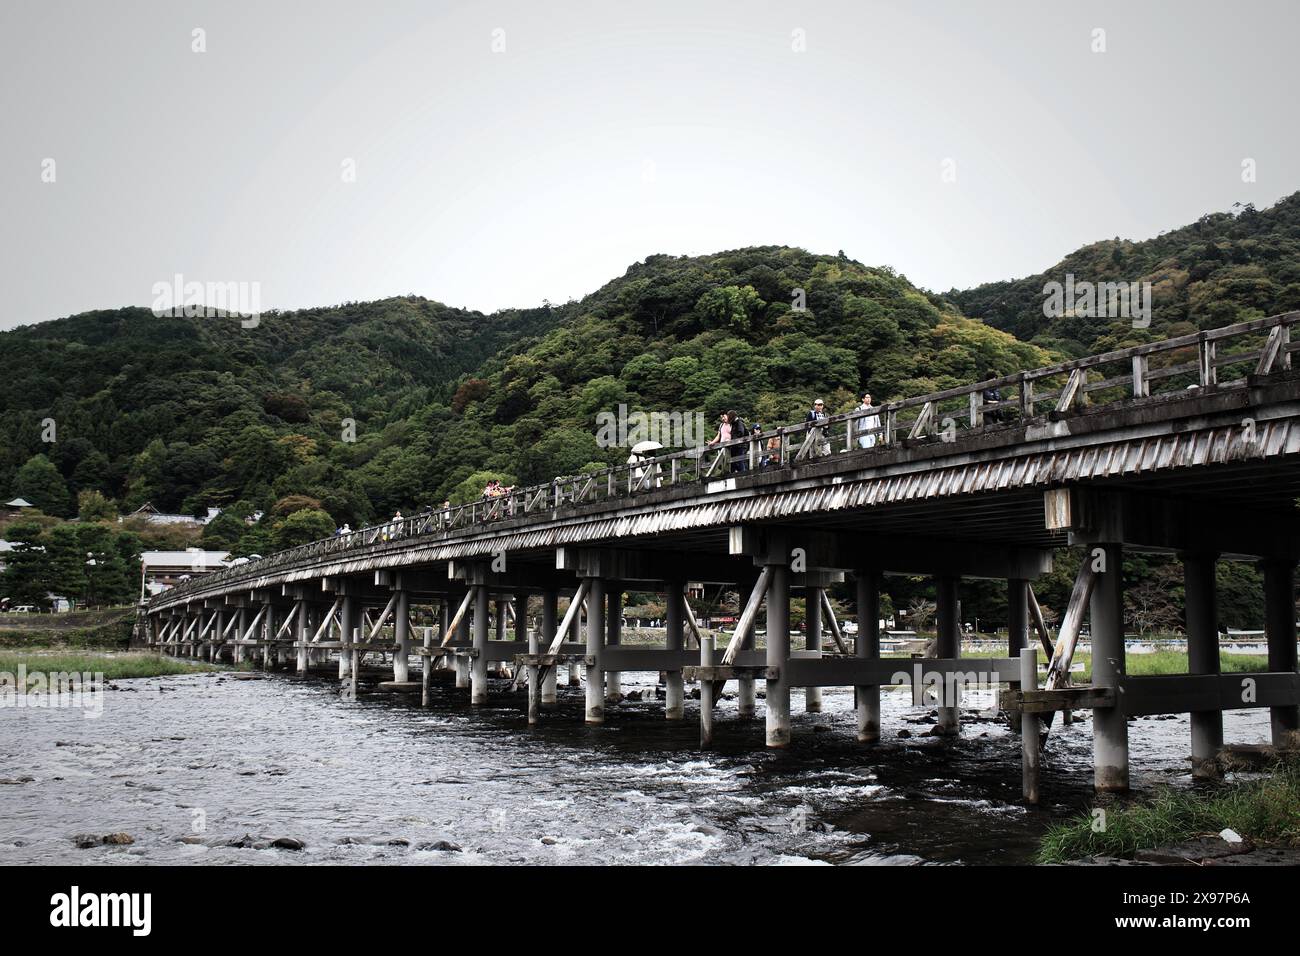 Wunderschöne Landschaft in Japan, das üppige Grün von Arashiyama, das Rauschen des Katsura-Flusses und die Togetsukyo-Brücke Stockfoto